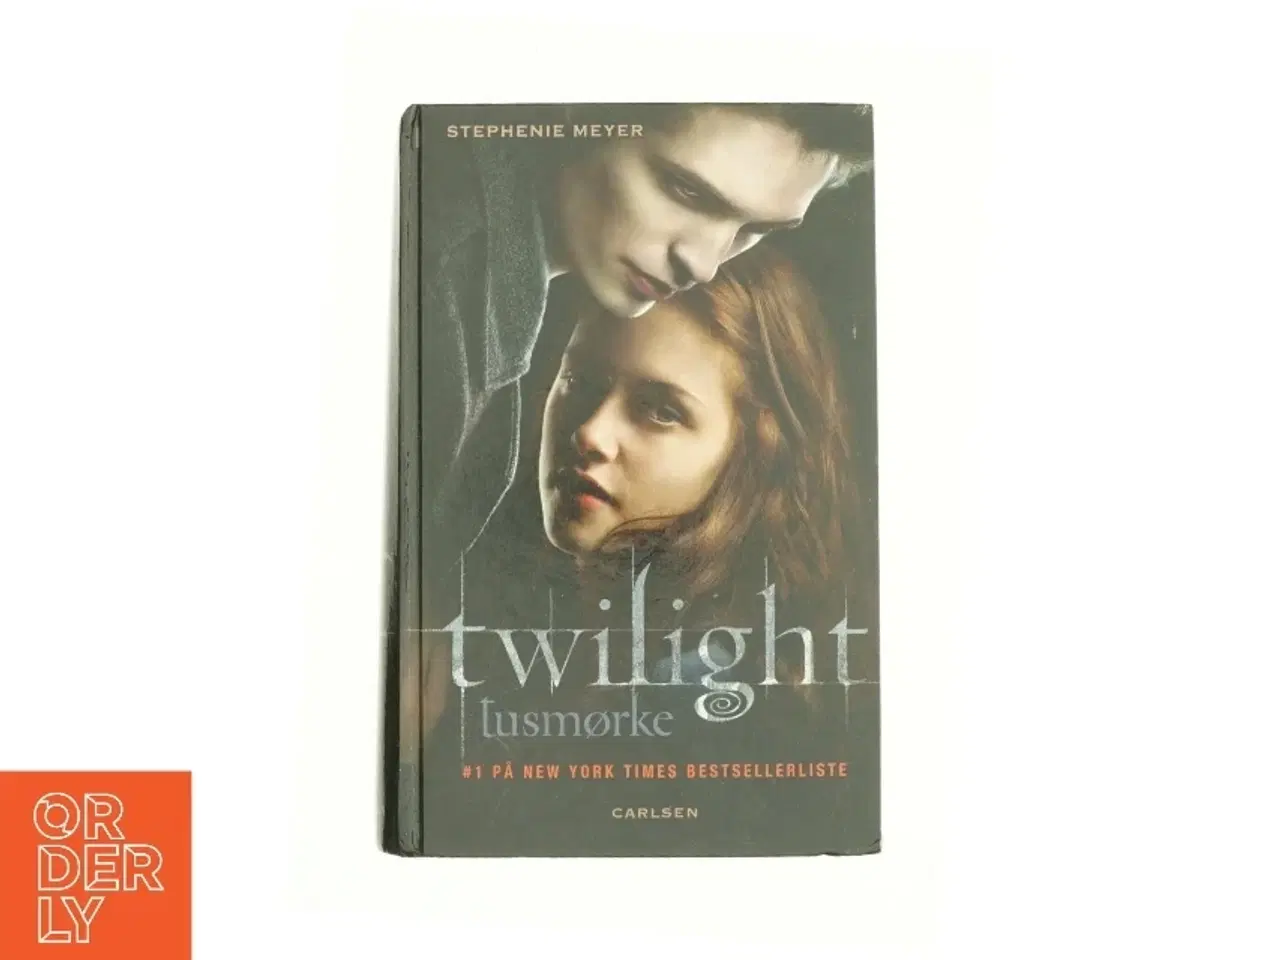 Billede 1 - Twilight - tusmørke af Stephenie Meyer (Bog)